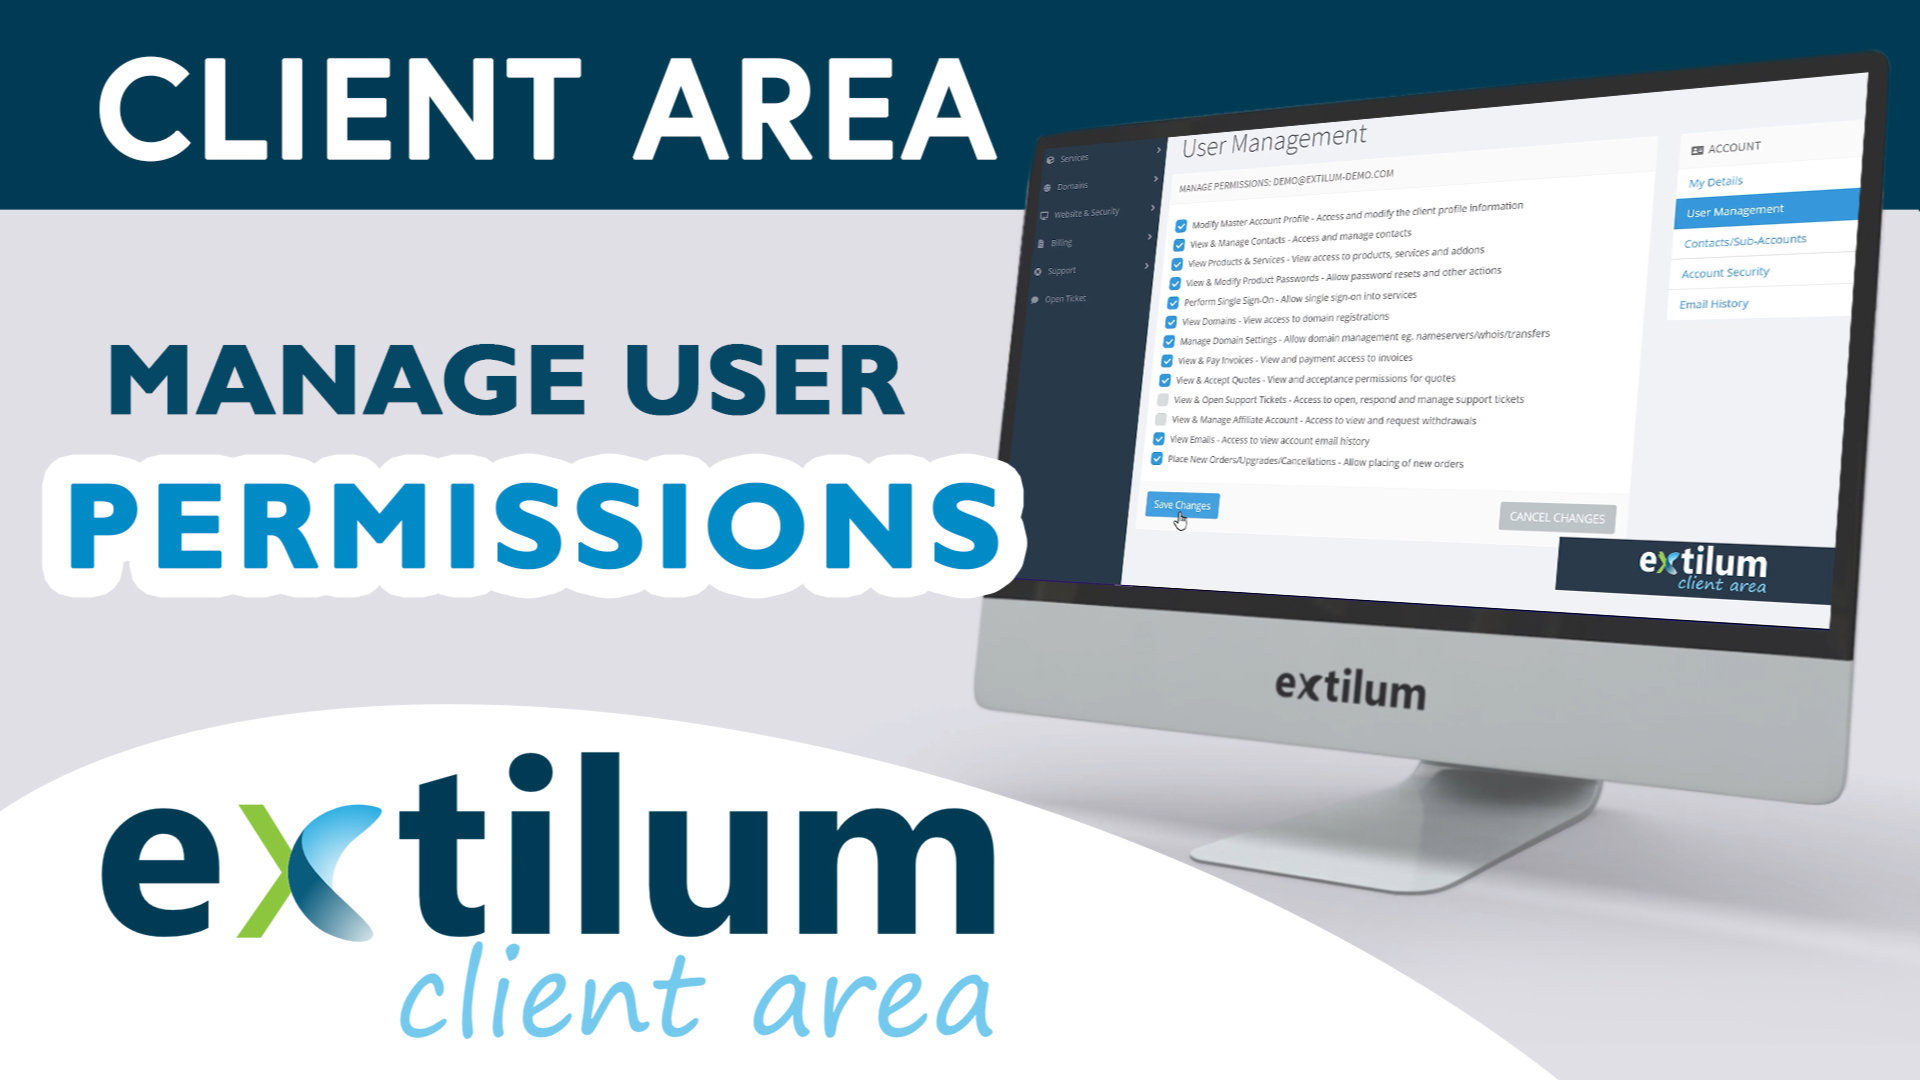 Extilum Client Area - Mnage User Permissions